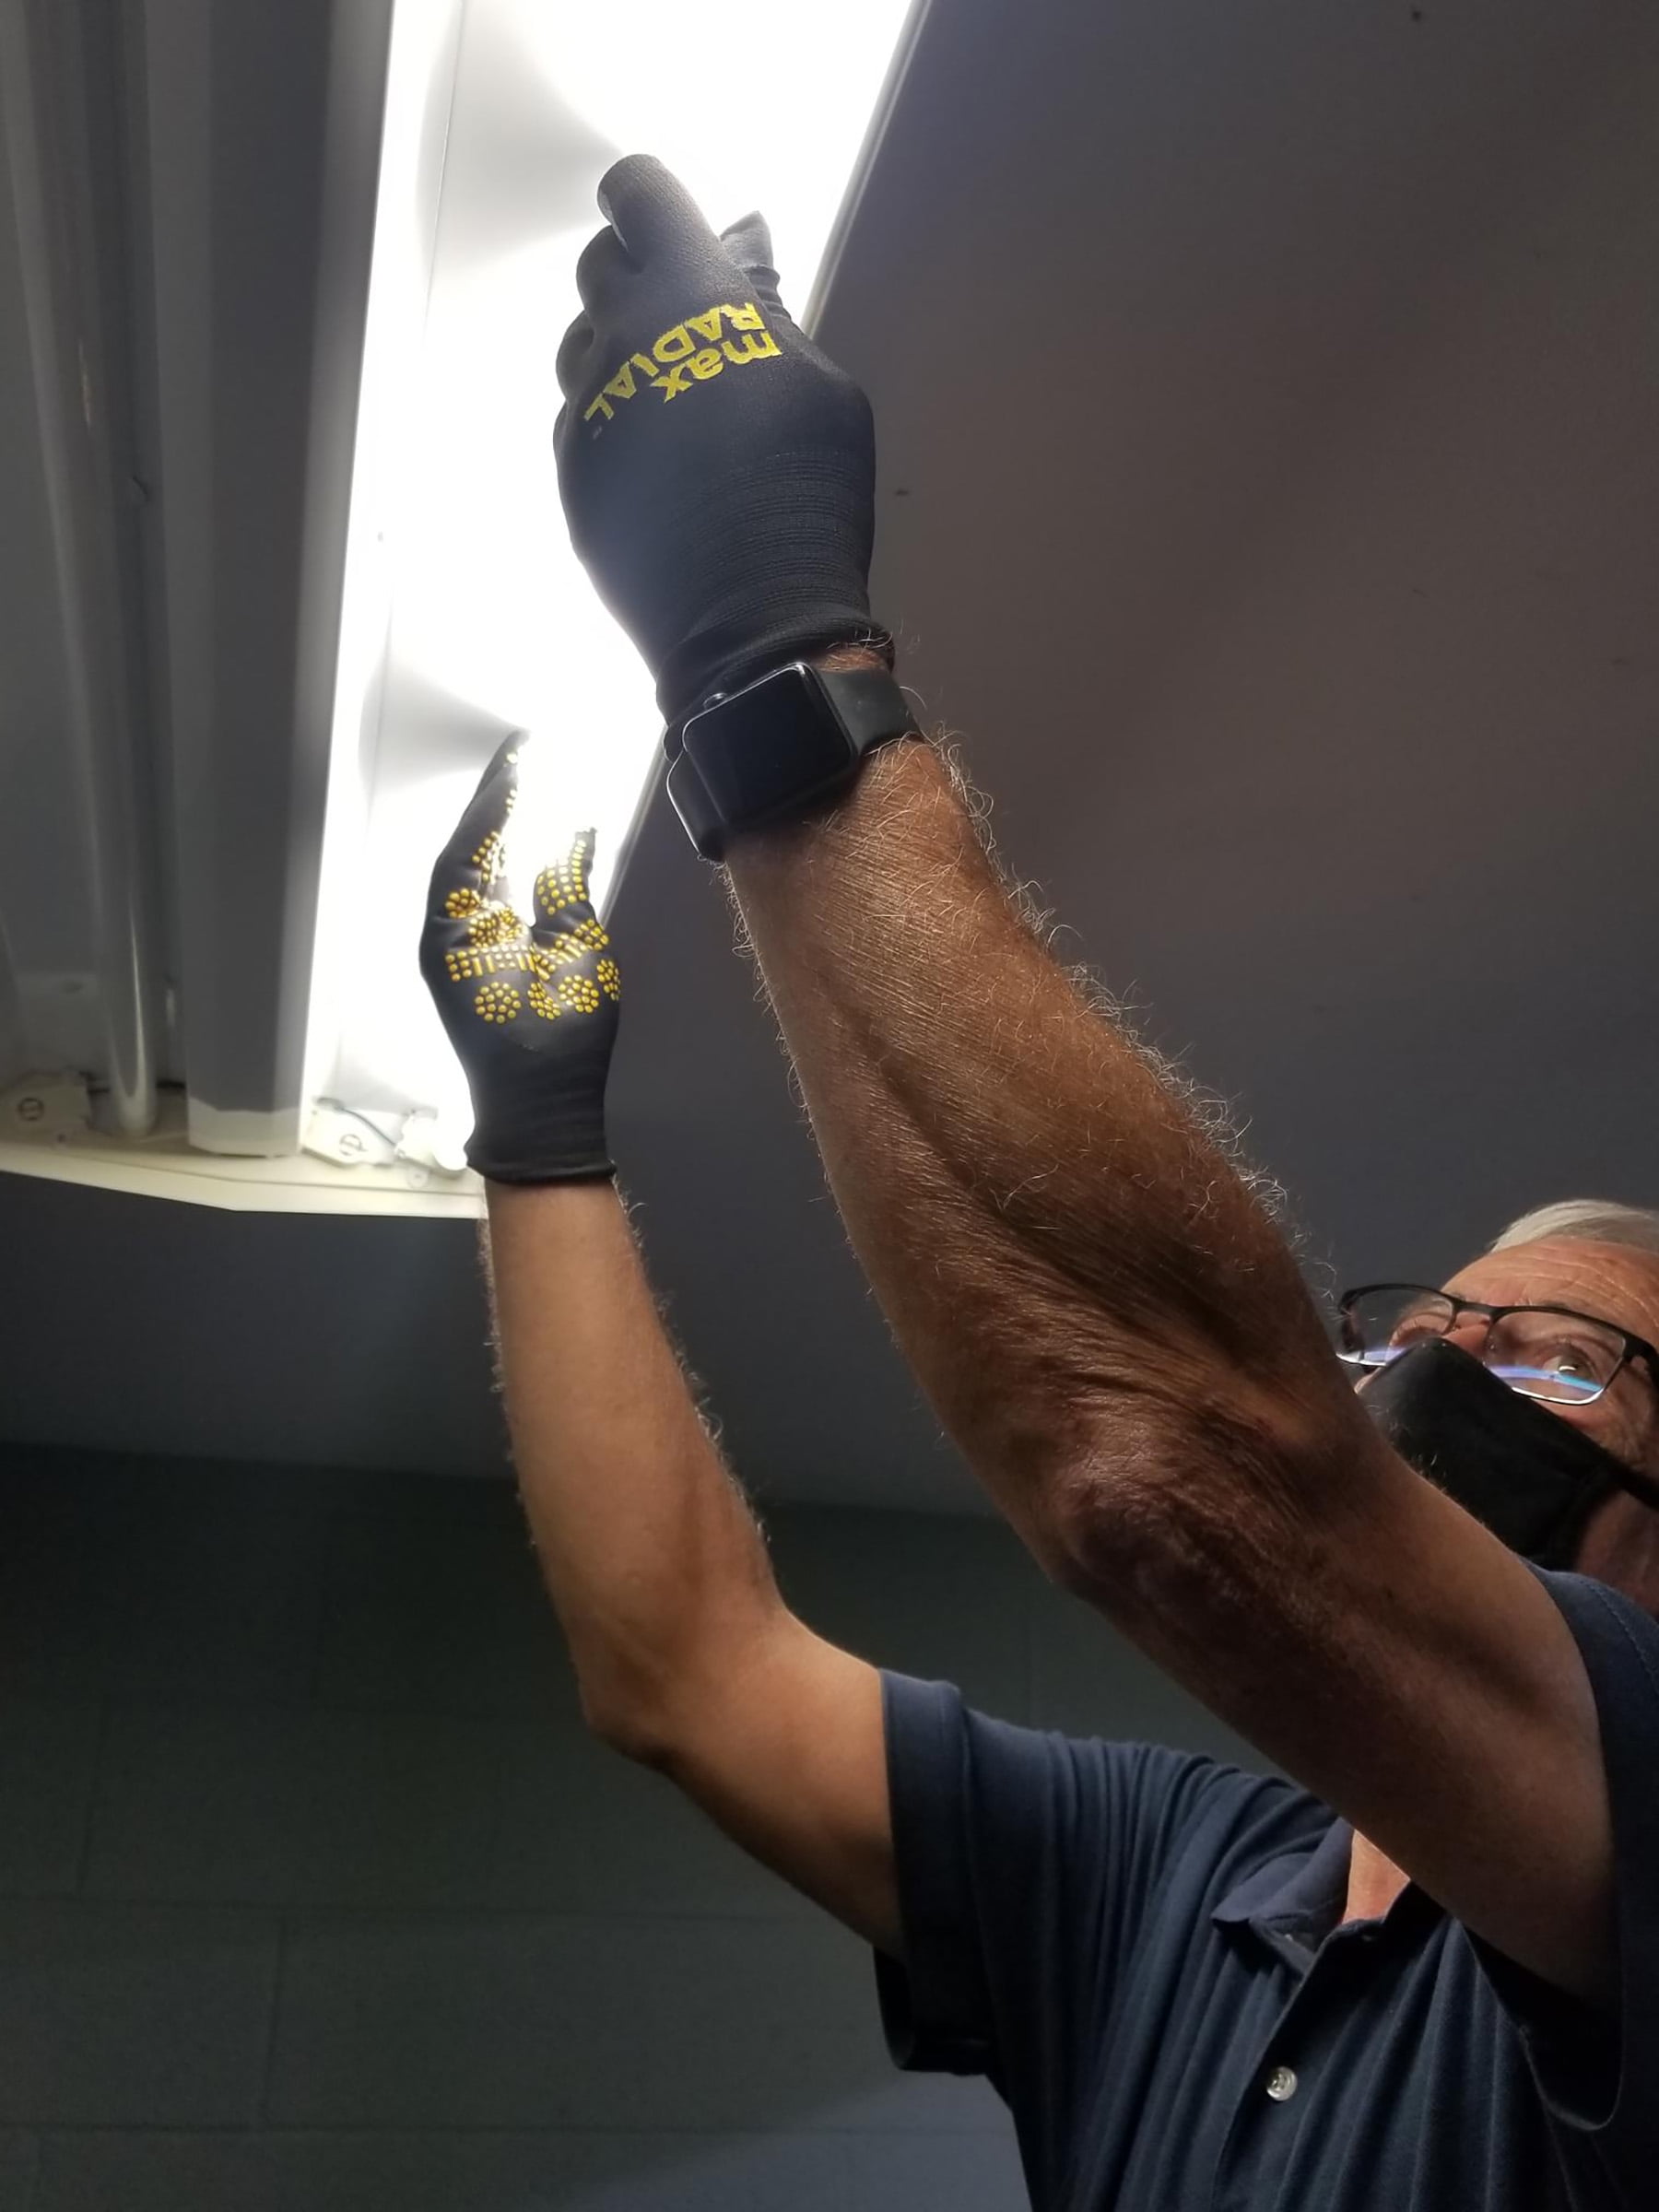 MidWest Gloves & Gear, Unisex, 6 Pack Max Grip™ Hi-Viz Yellow Gripper  Glove, Size SM